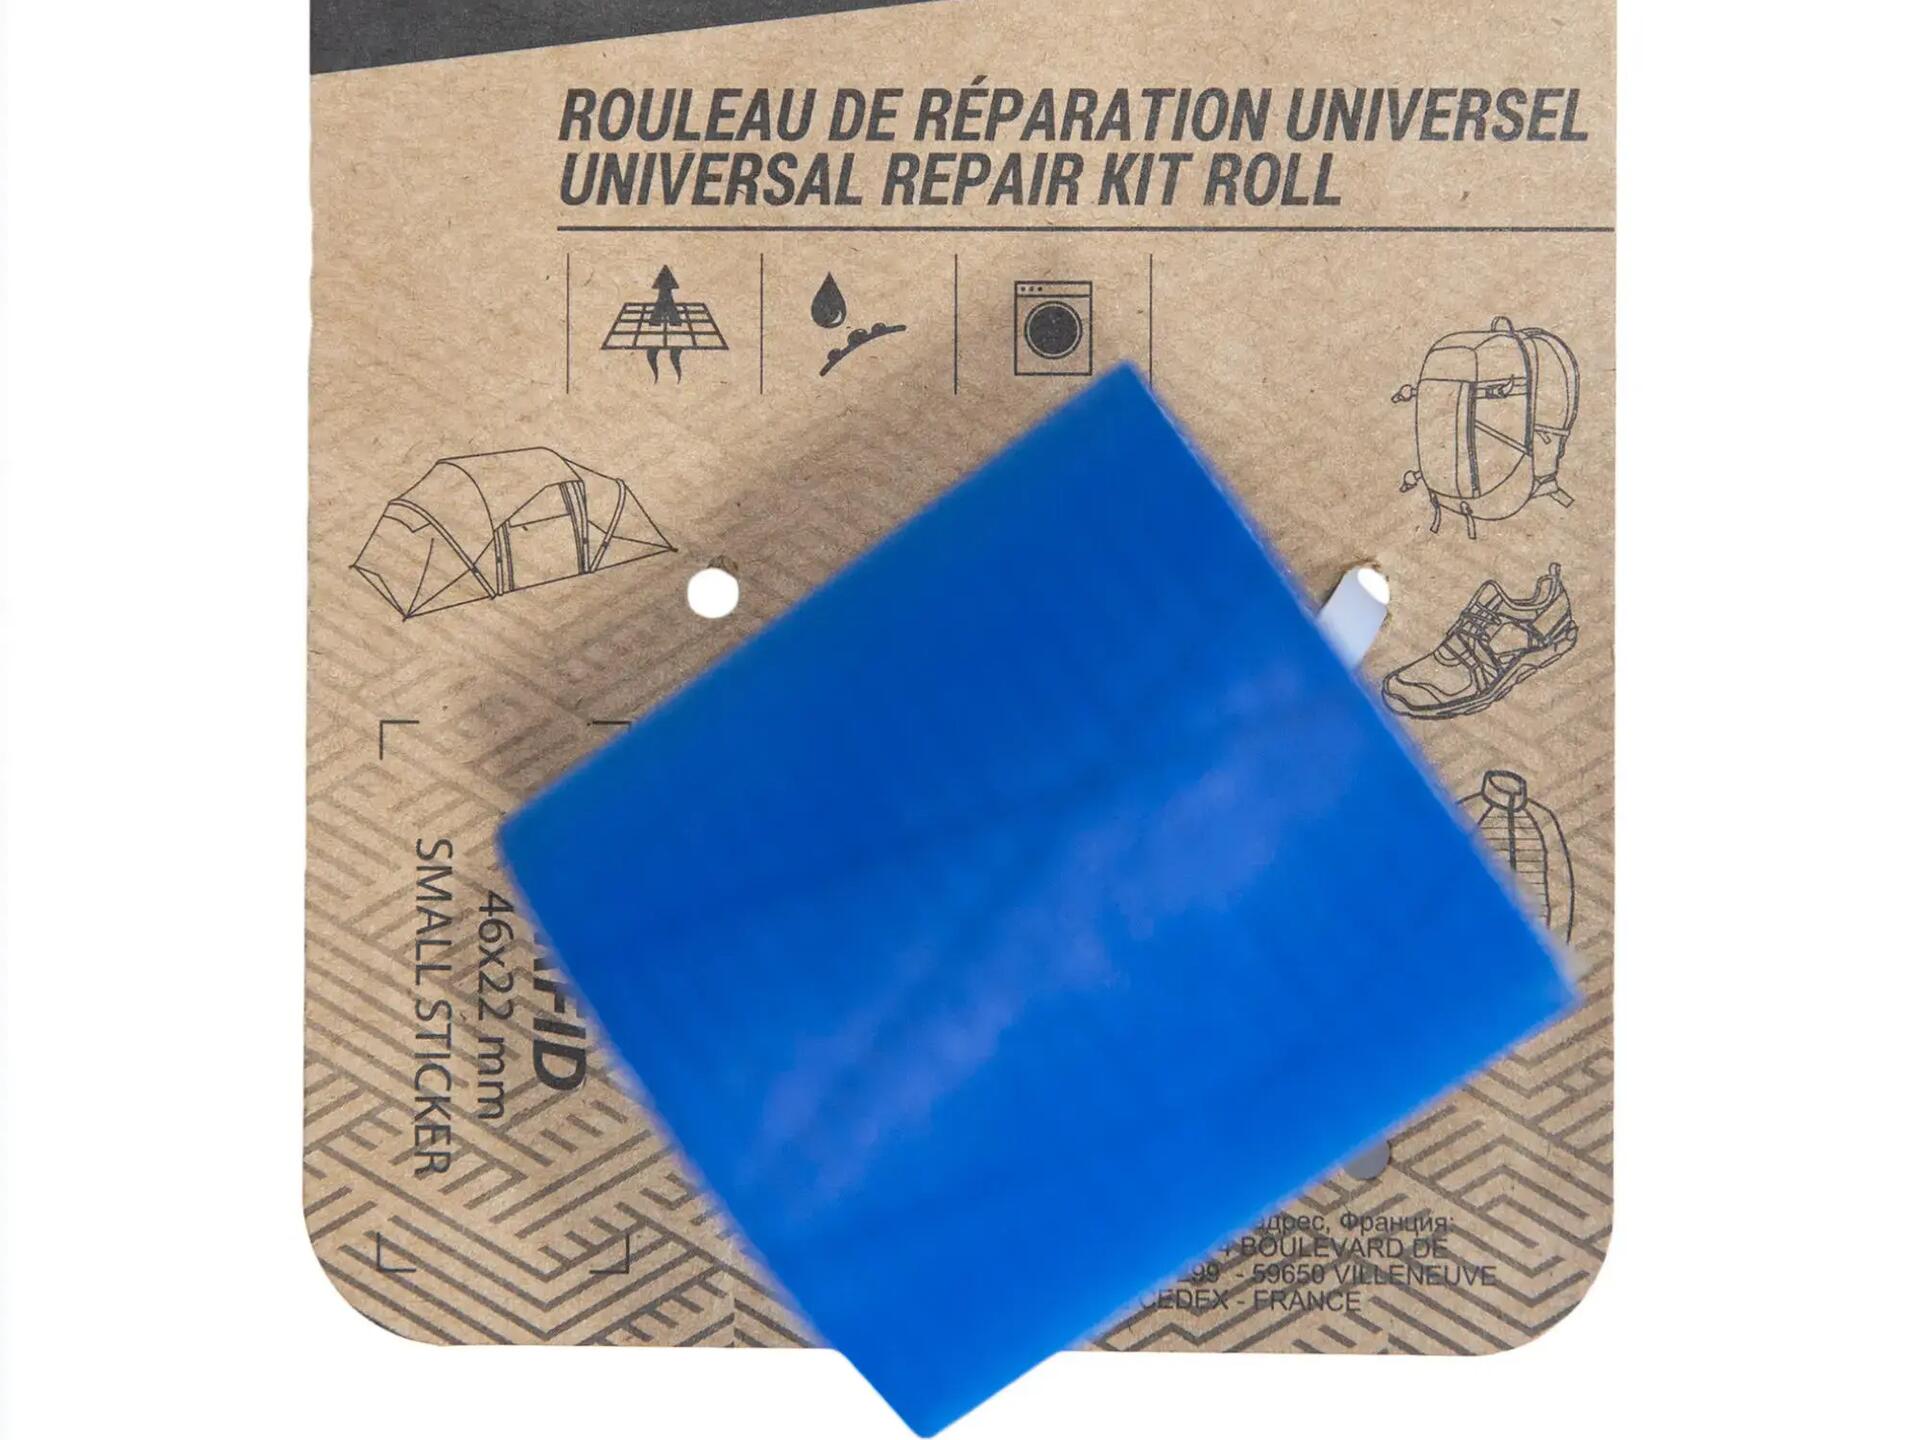 Universal repair kit roll